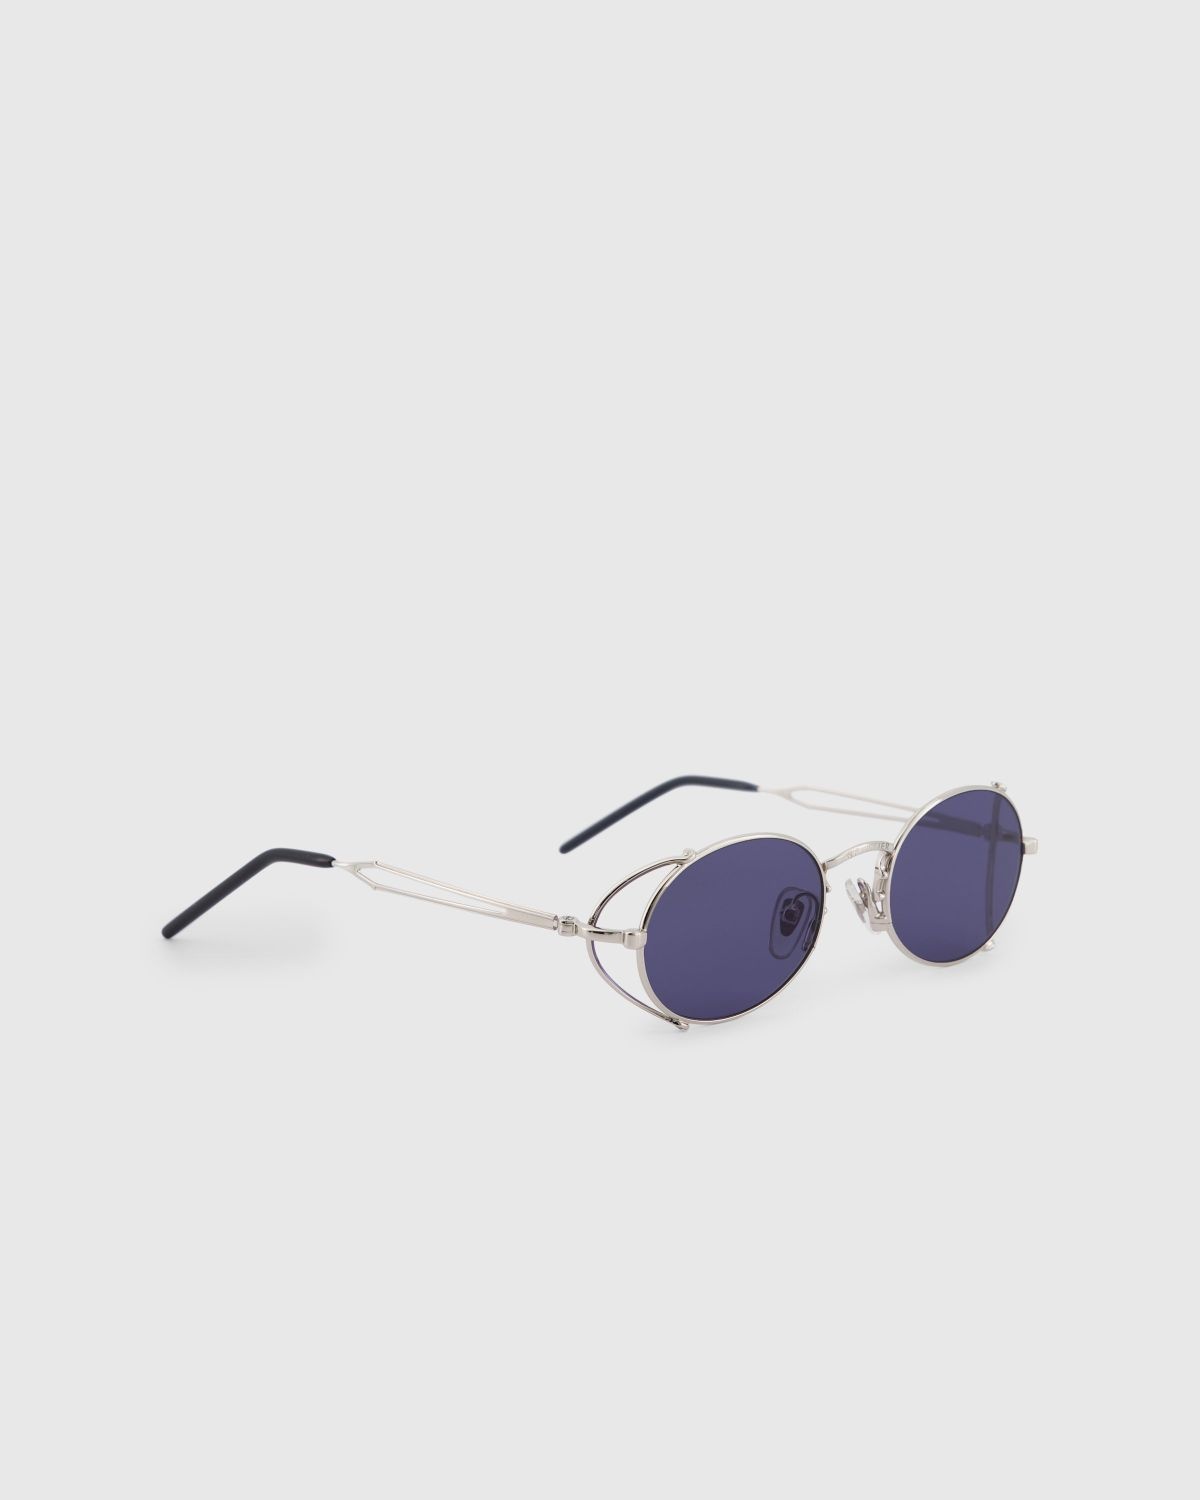 Jean Paul Gaultier x Burna Boy – 55-3175 Arceau Sunglasses Silver - 2